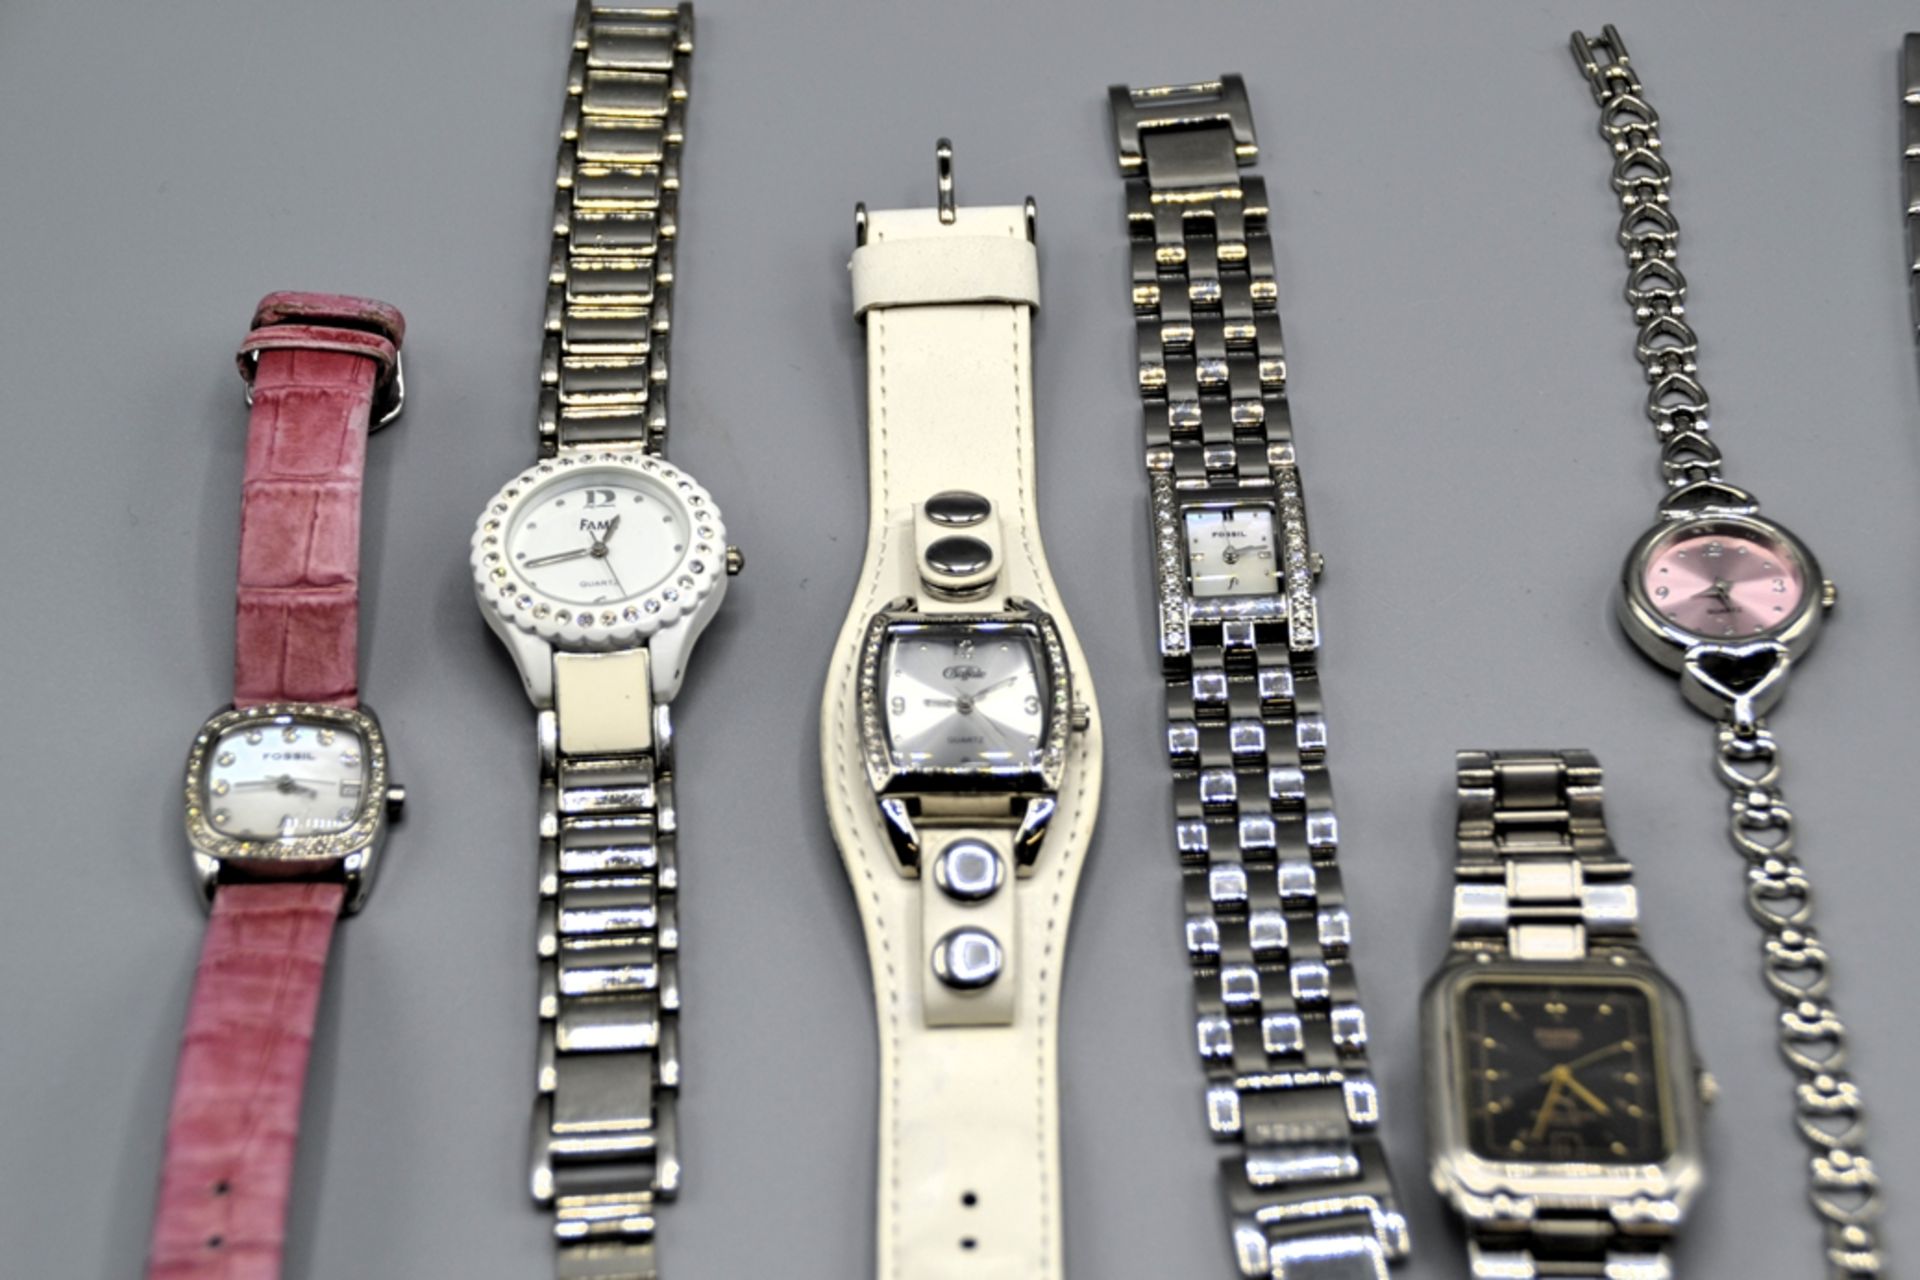 Uhren Damenuhren Fossil Esprit Puma etc. Konvolut 7 St., ungetestet - Image 2 of 2